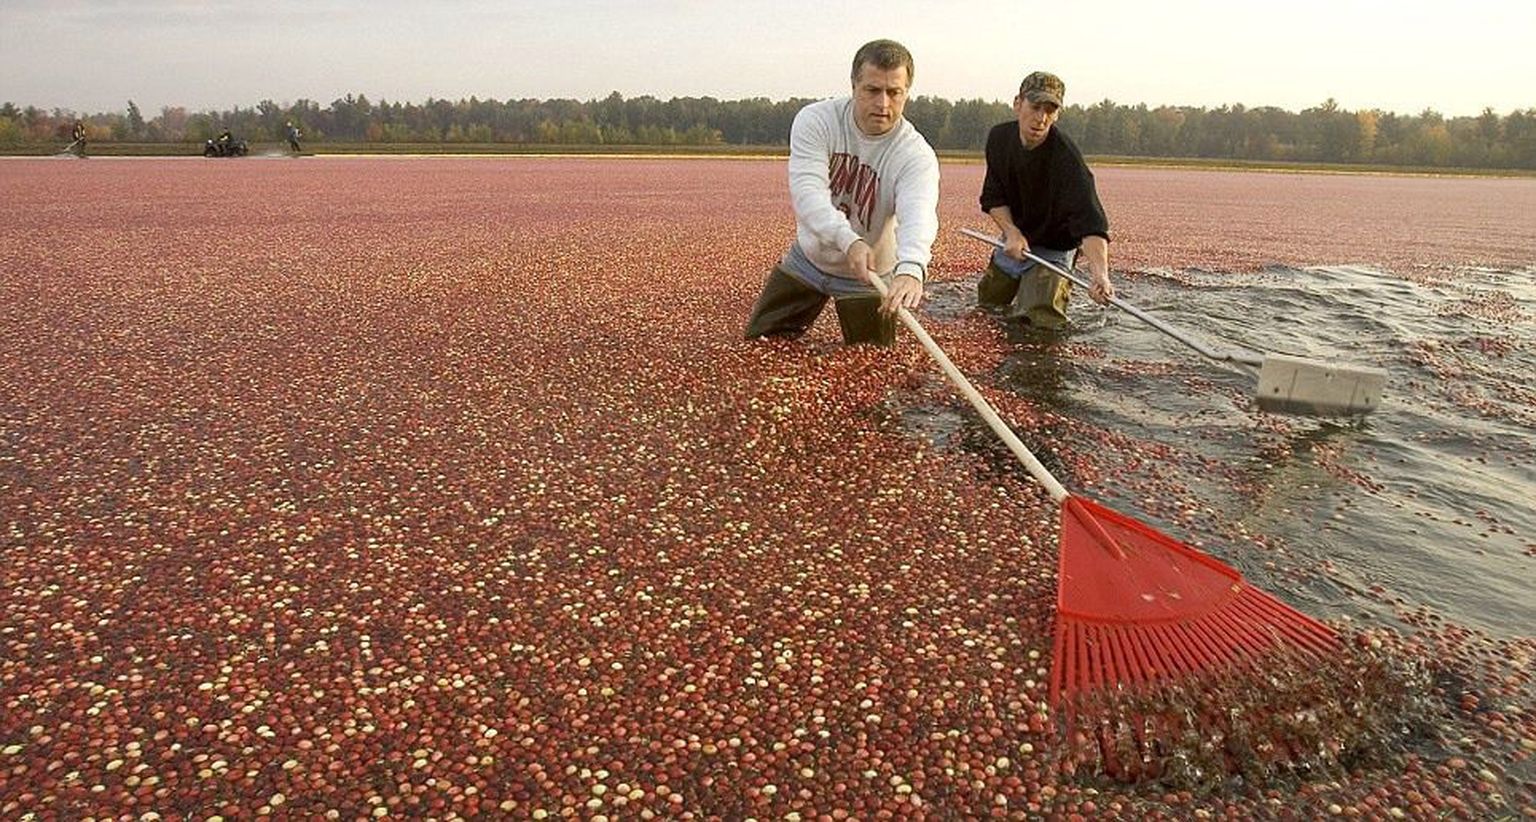 Сбор урожая клюквы, штат Висконсин, США